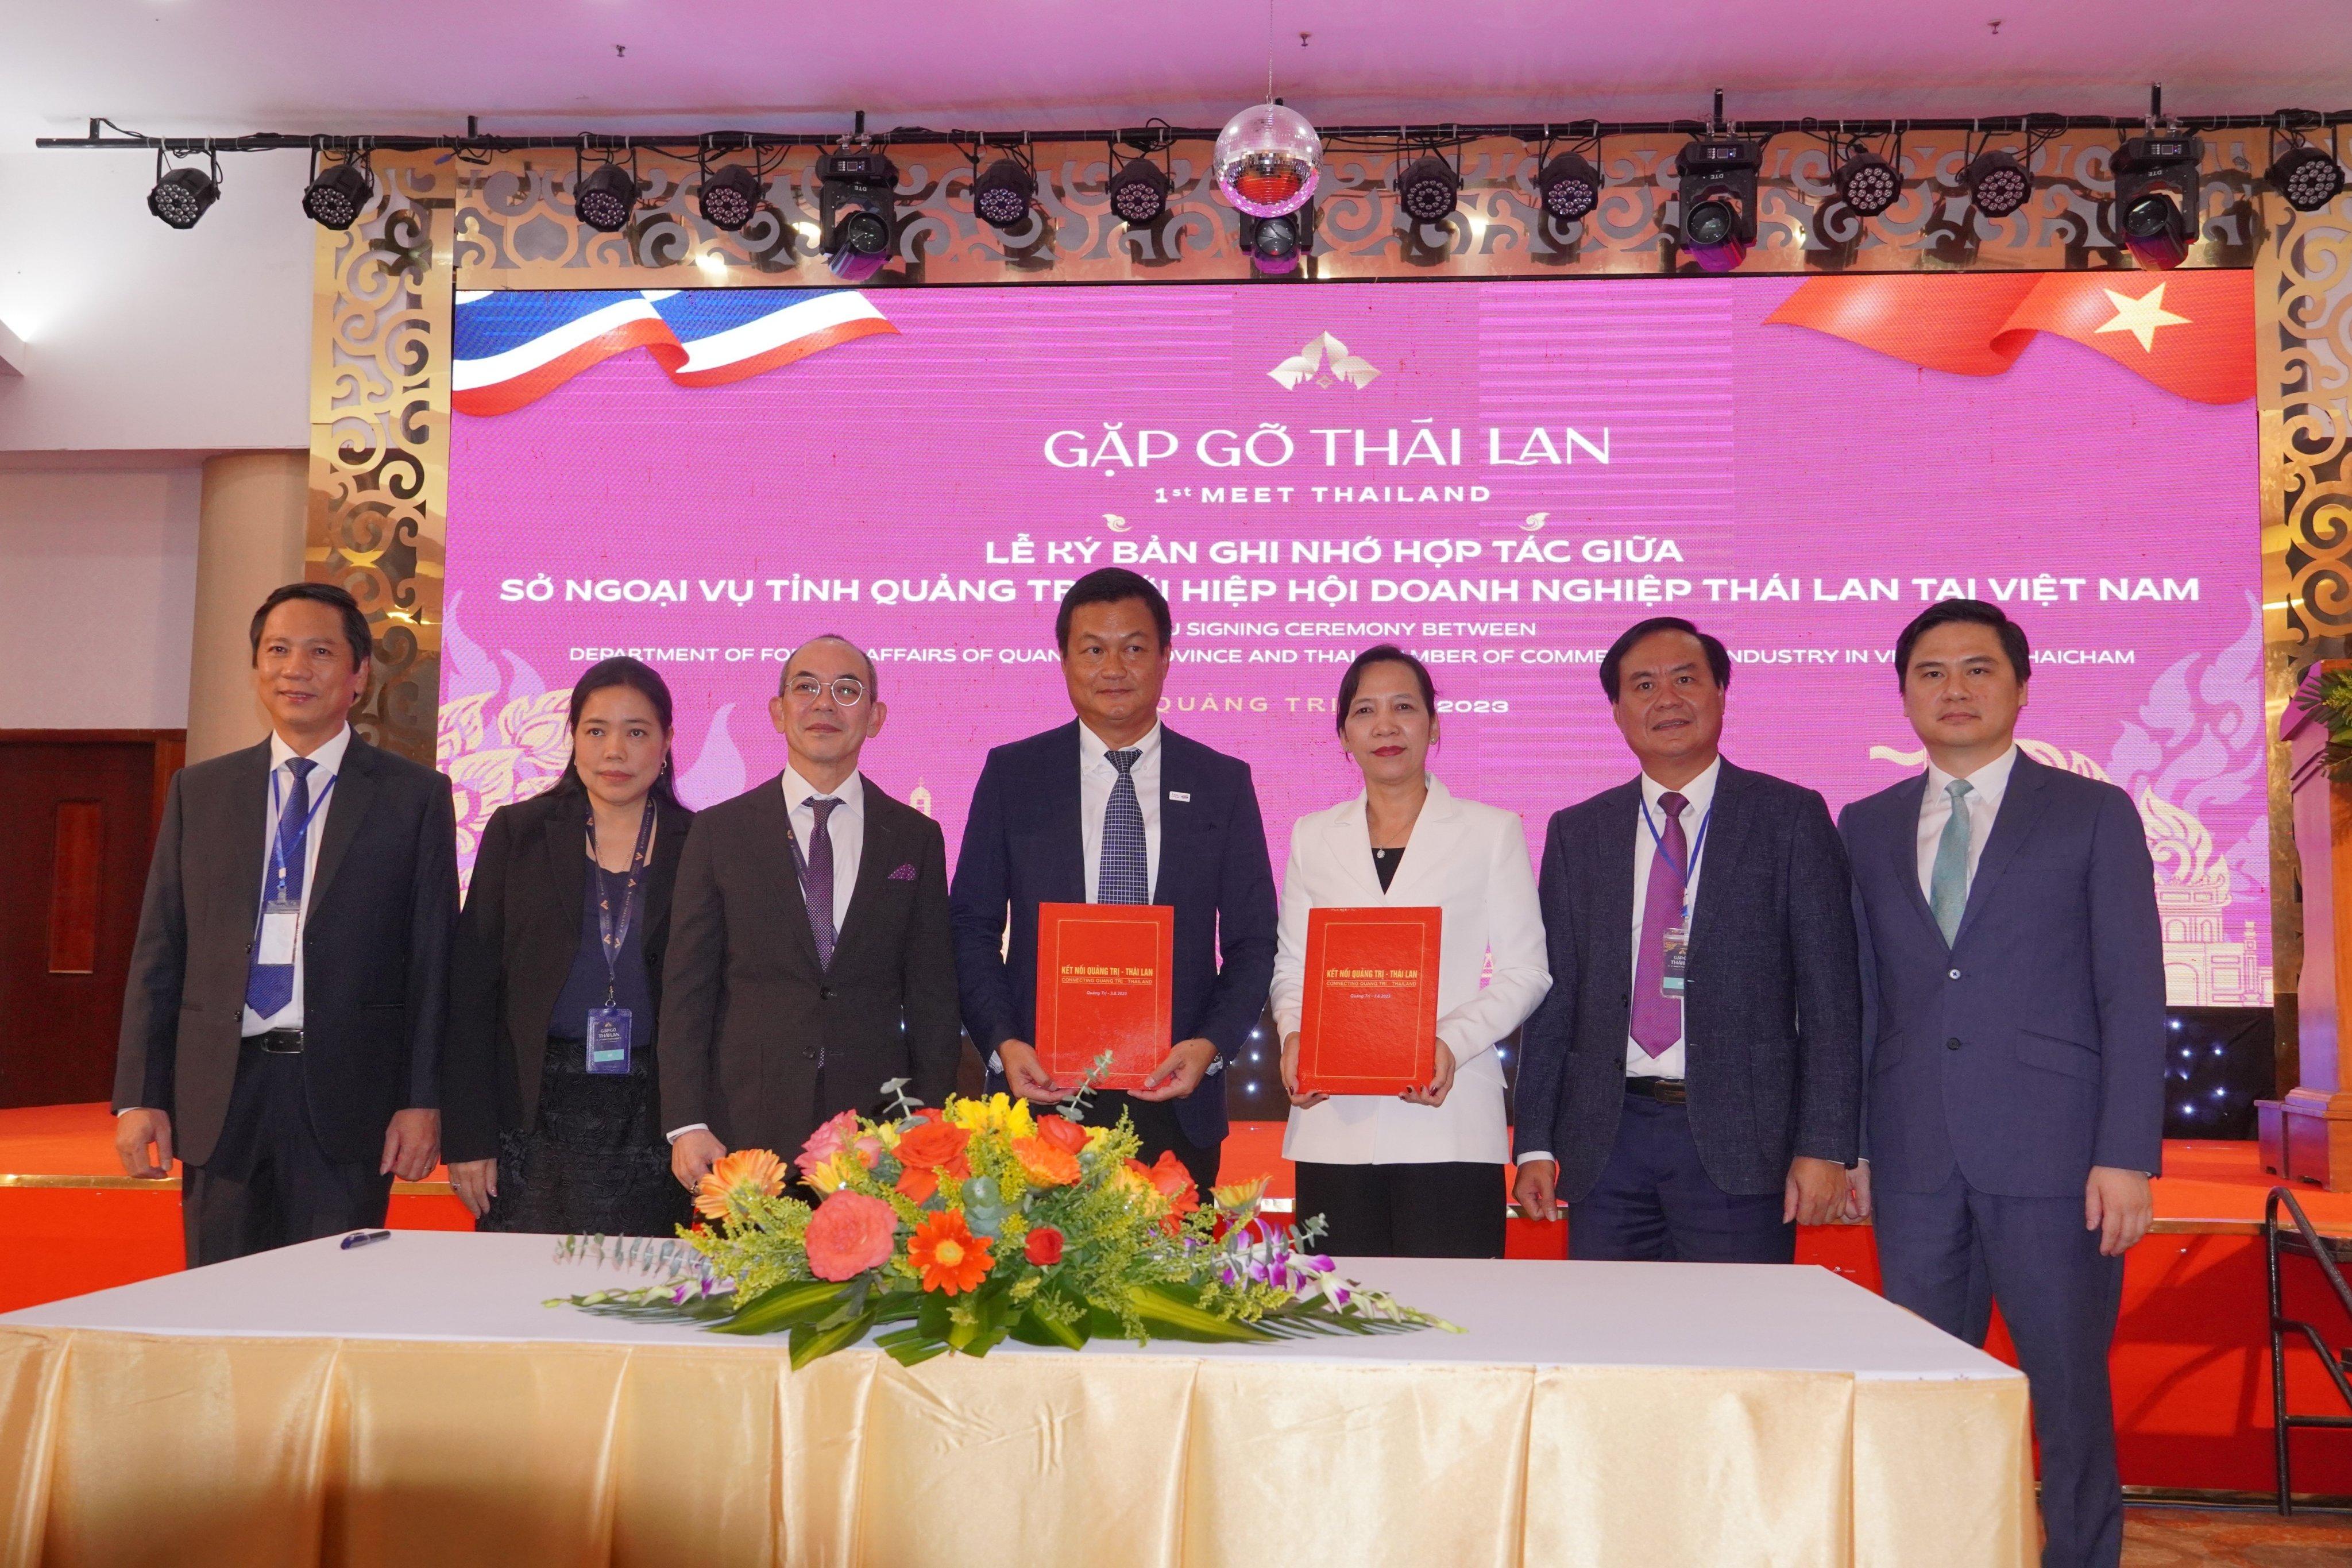 Hội nghị “Gặp gỡ Thái Lan - 1st Meet Thailand” được tổ chức thành công tại tỉnh Quảng Trị